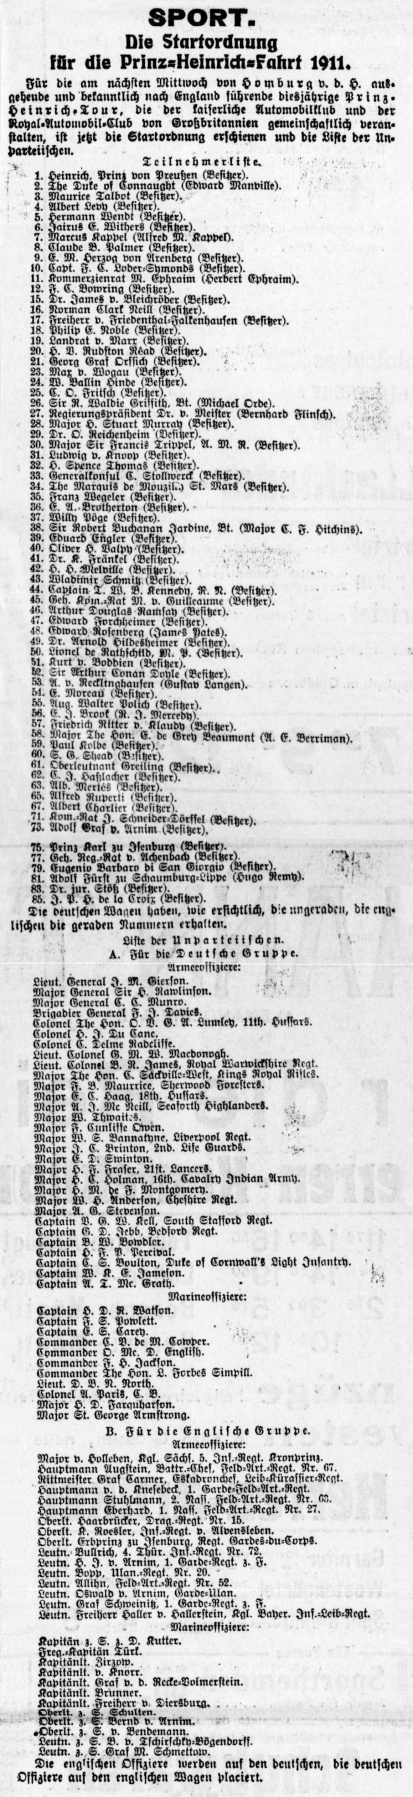 List of drivers and observers in German press (Berliner Tageblatt, 30 june 1911, p. 7)